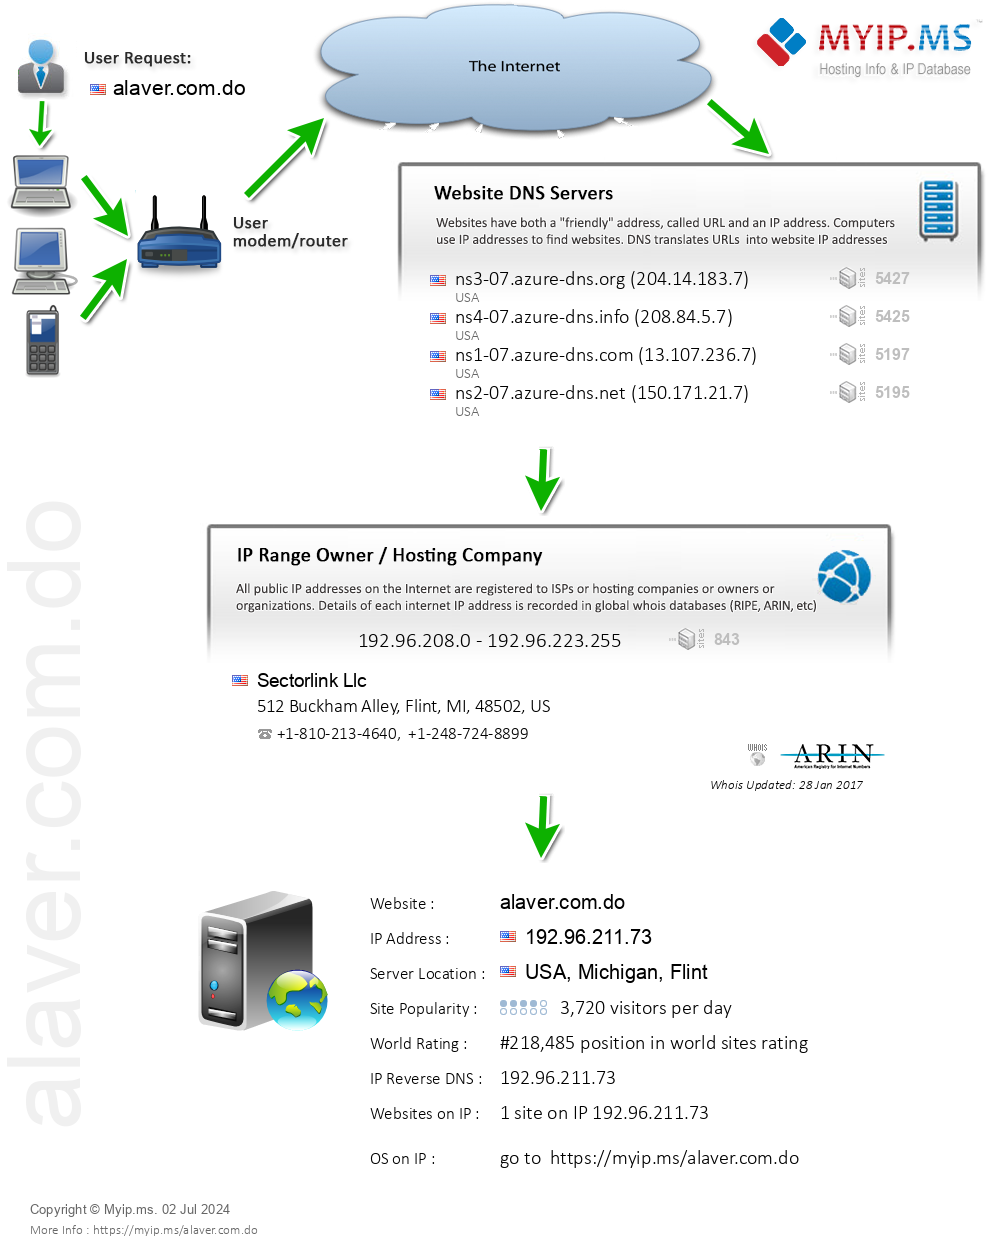 Alaver.com.do - Website Hosting Visual IP Diagram